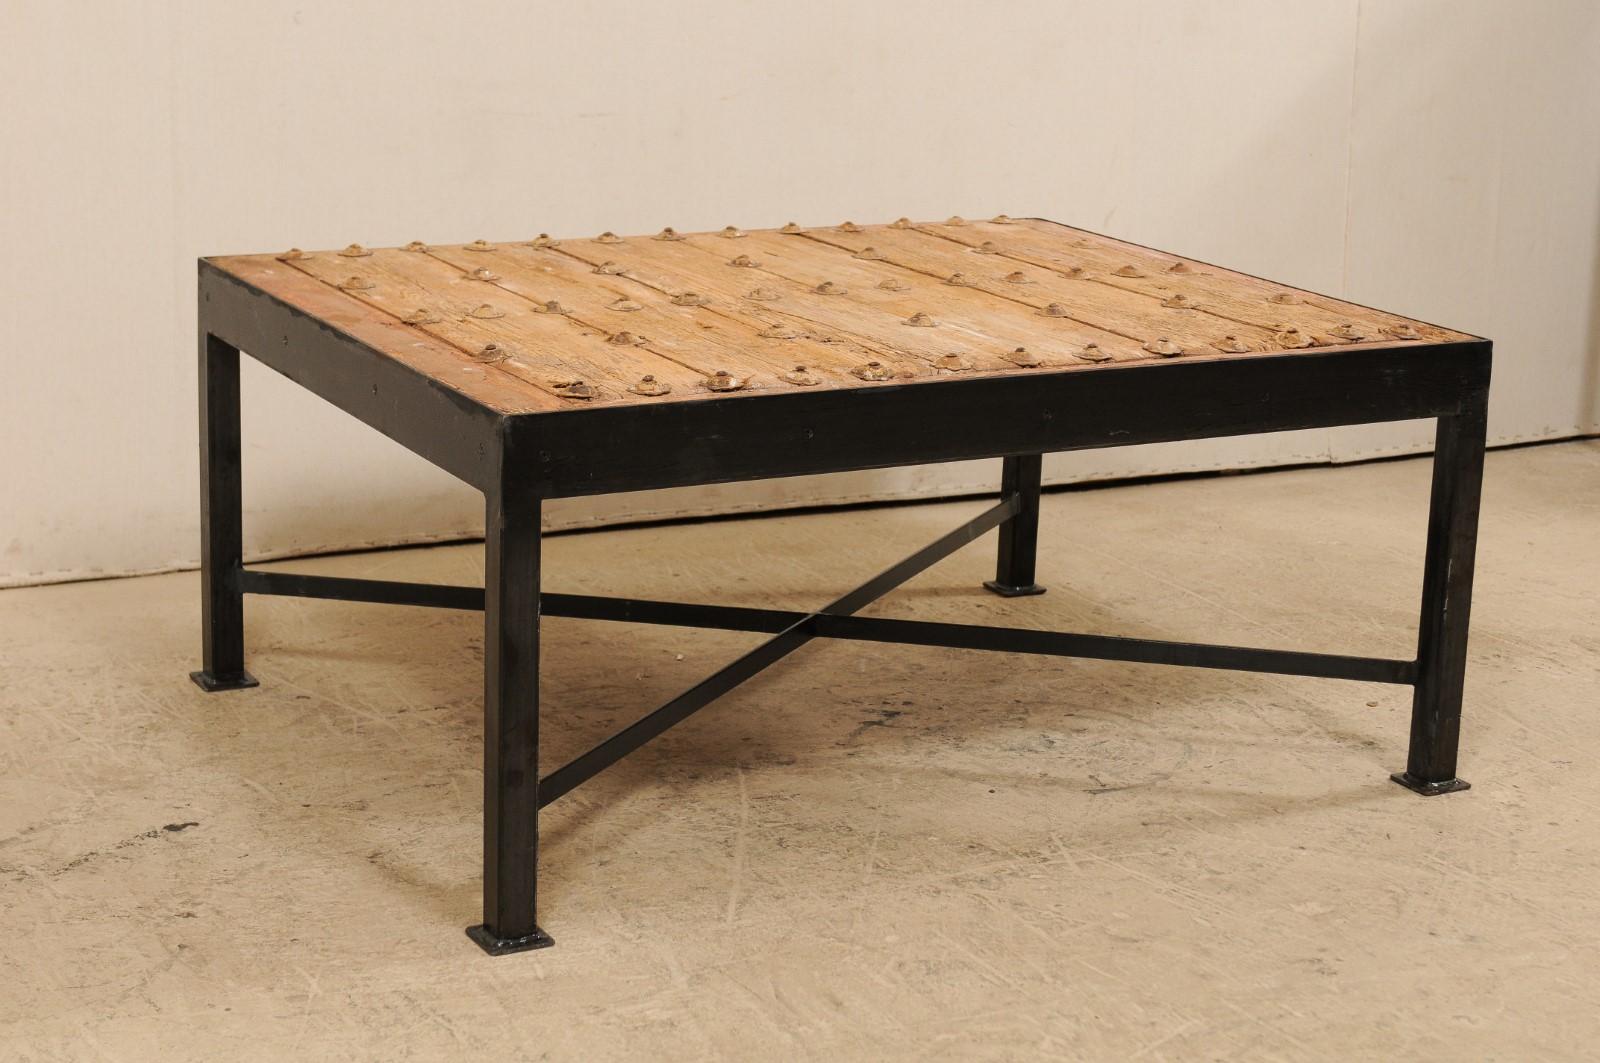 Il s'agit d'une table basse personnalisée fabriquée à partir d'une porte espagnole du 18e siècle. Cette merveilleuse table basse a été façonnée à partir d'une porte espagnole du XVIIIe siècle, avec un plateau en planches de bois, à la patine